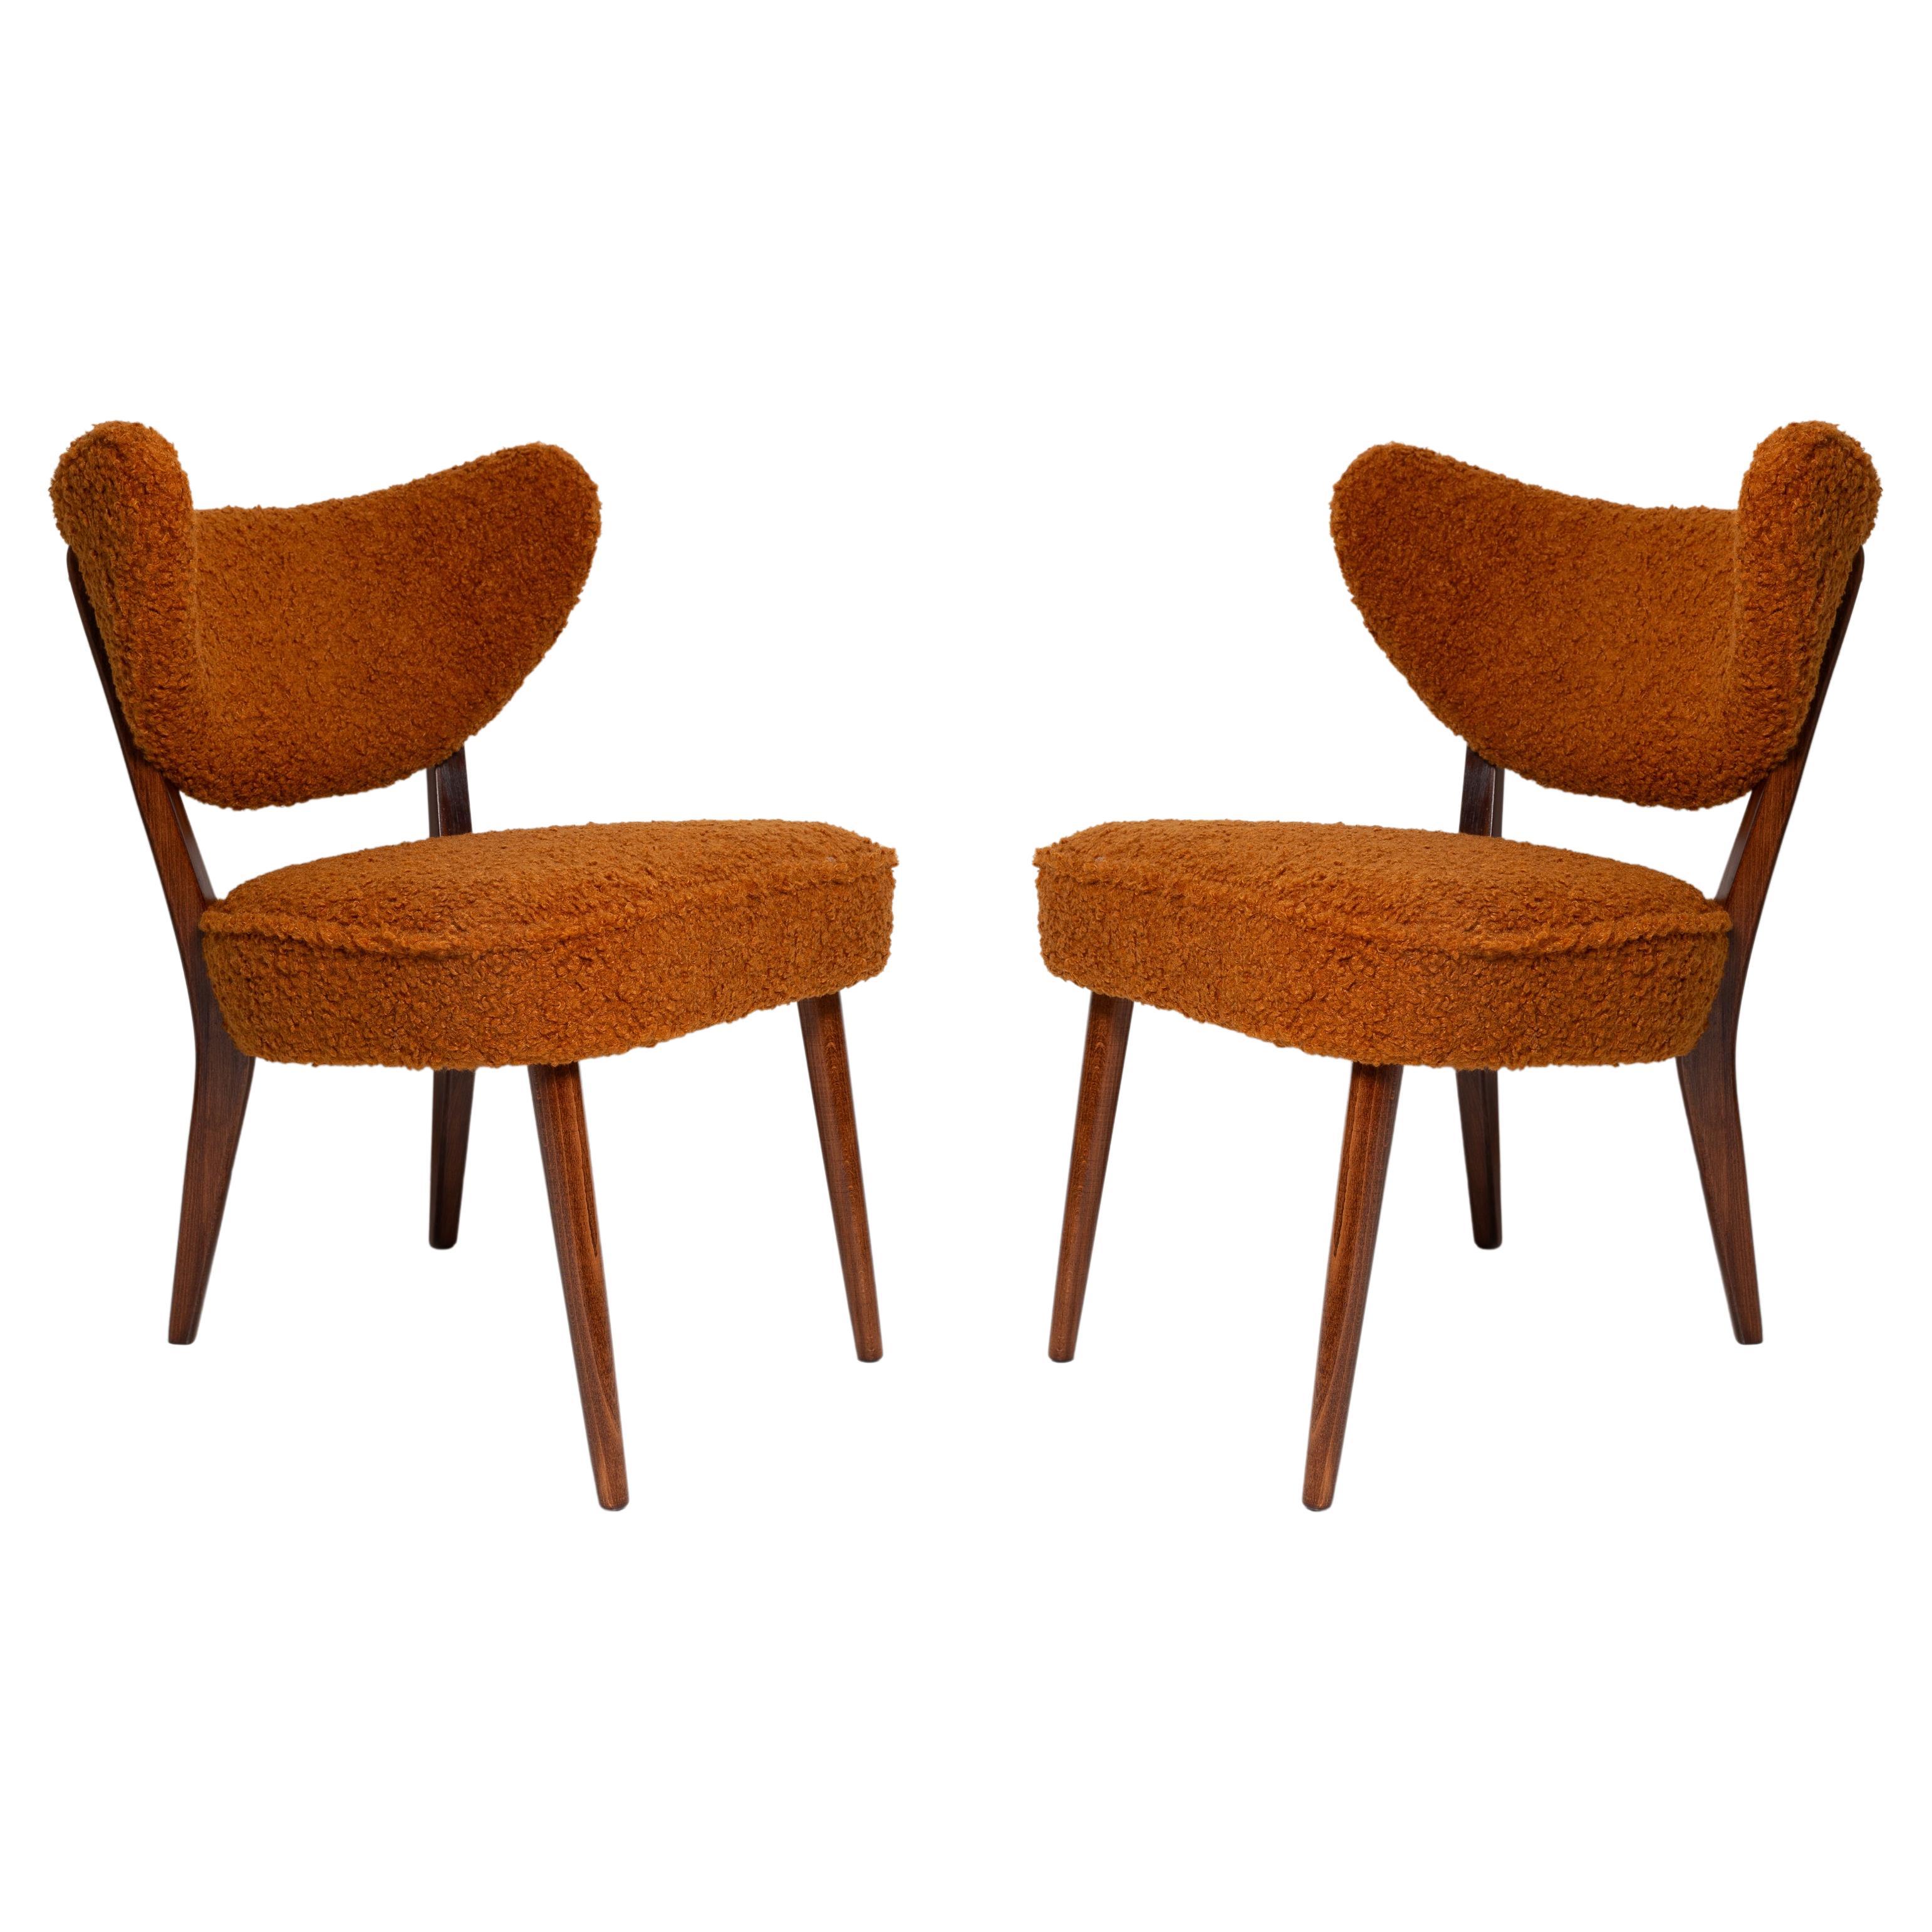 Federnde, sehr bequeme und stabile Clubsitze.
Es sind zeitgenössische Stühle, die vom Stil der 1960er Jahre inspiriert sind. 
Sie können als Sessel und Esszimmerstühle verwendet werden. 

Der Stuhl wurde von Vintola Studio entworfen, einer